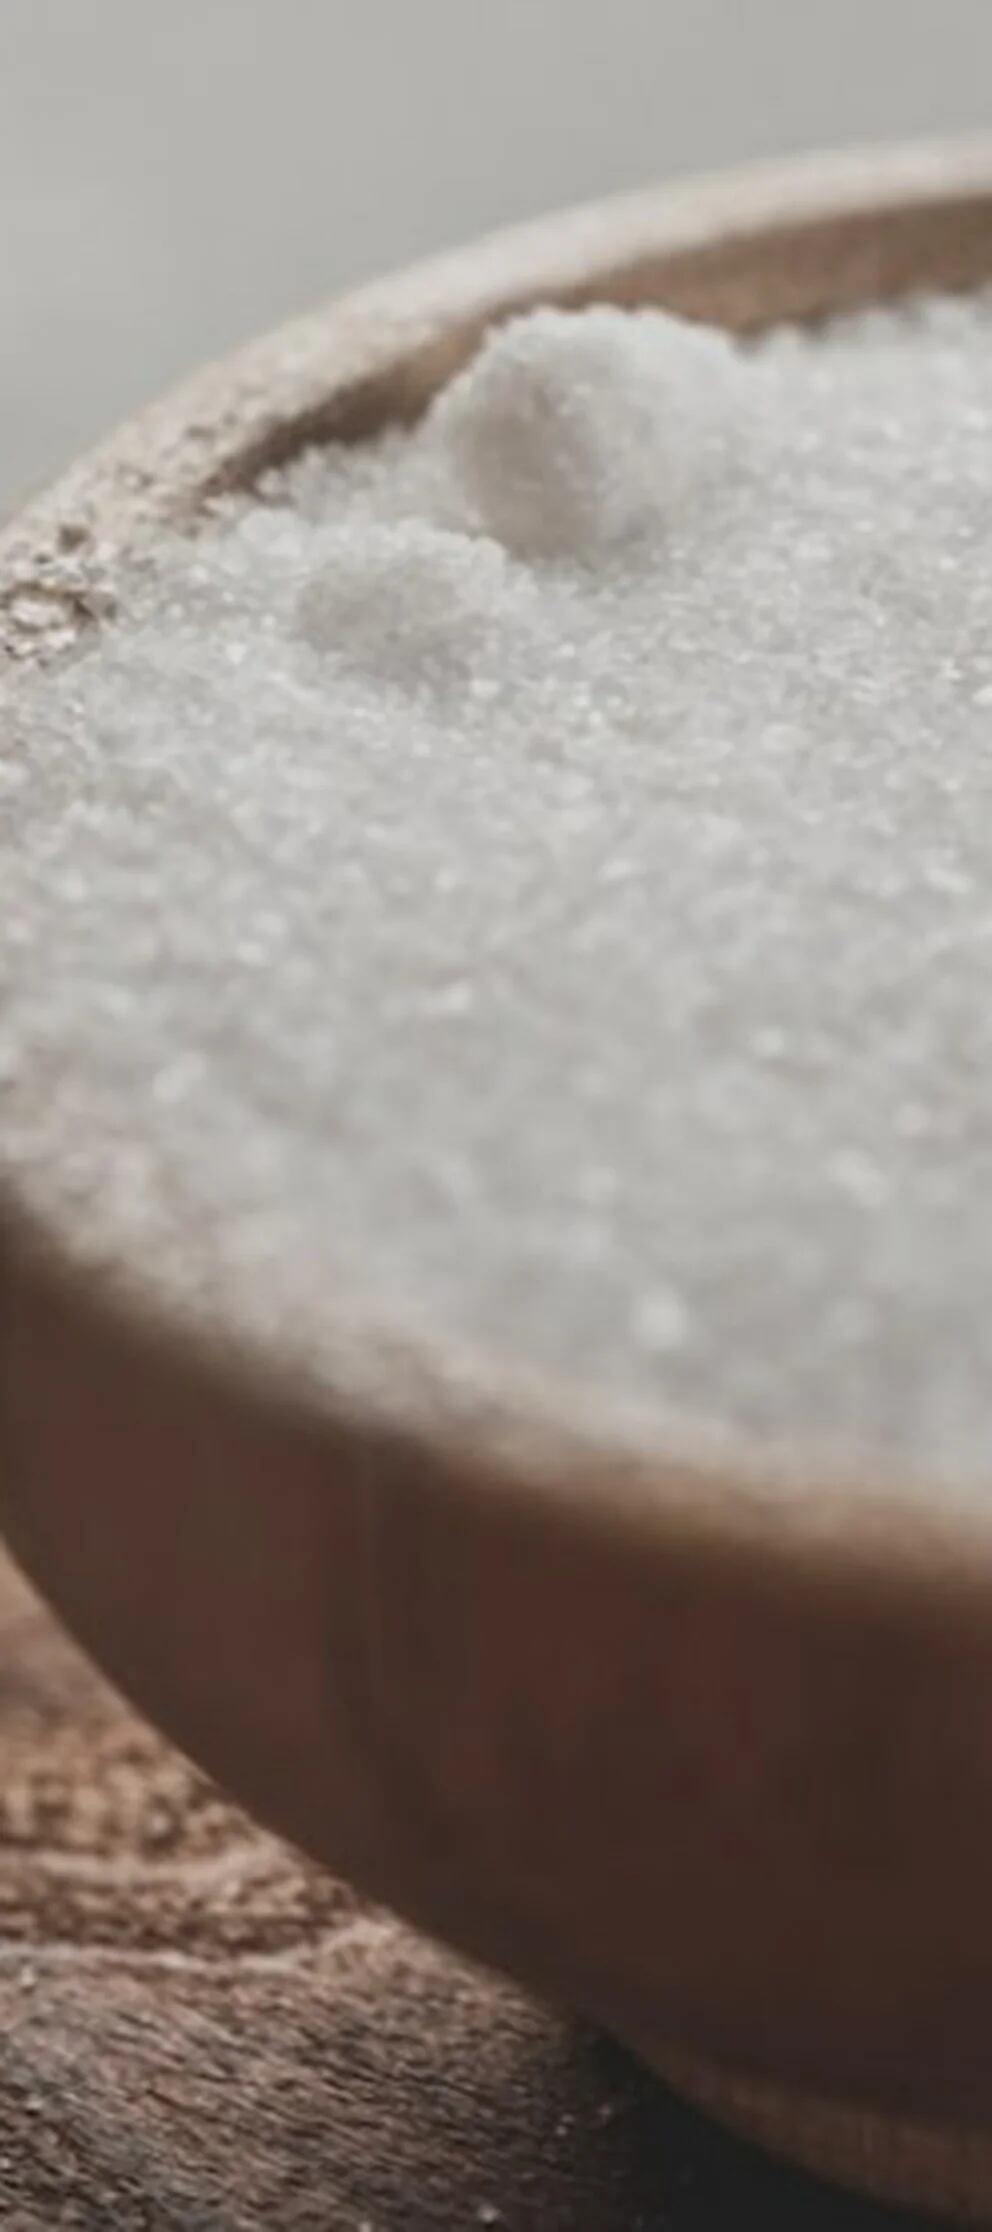 Qué es el bicarbonato de sodio y para qué sirve? - Infobae